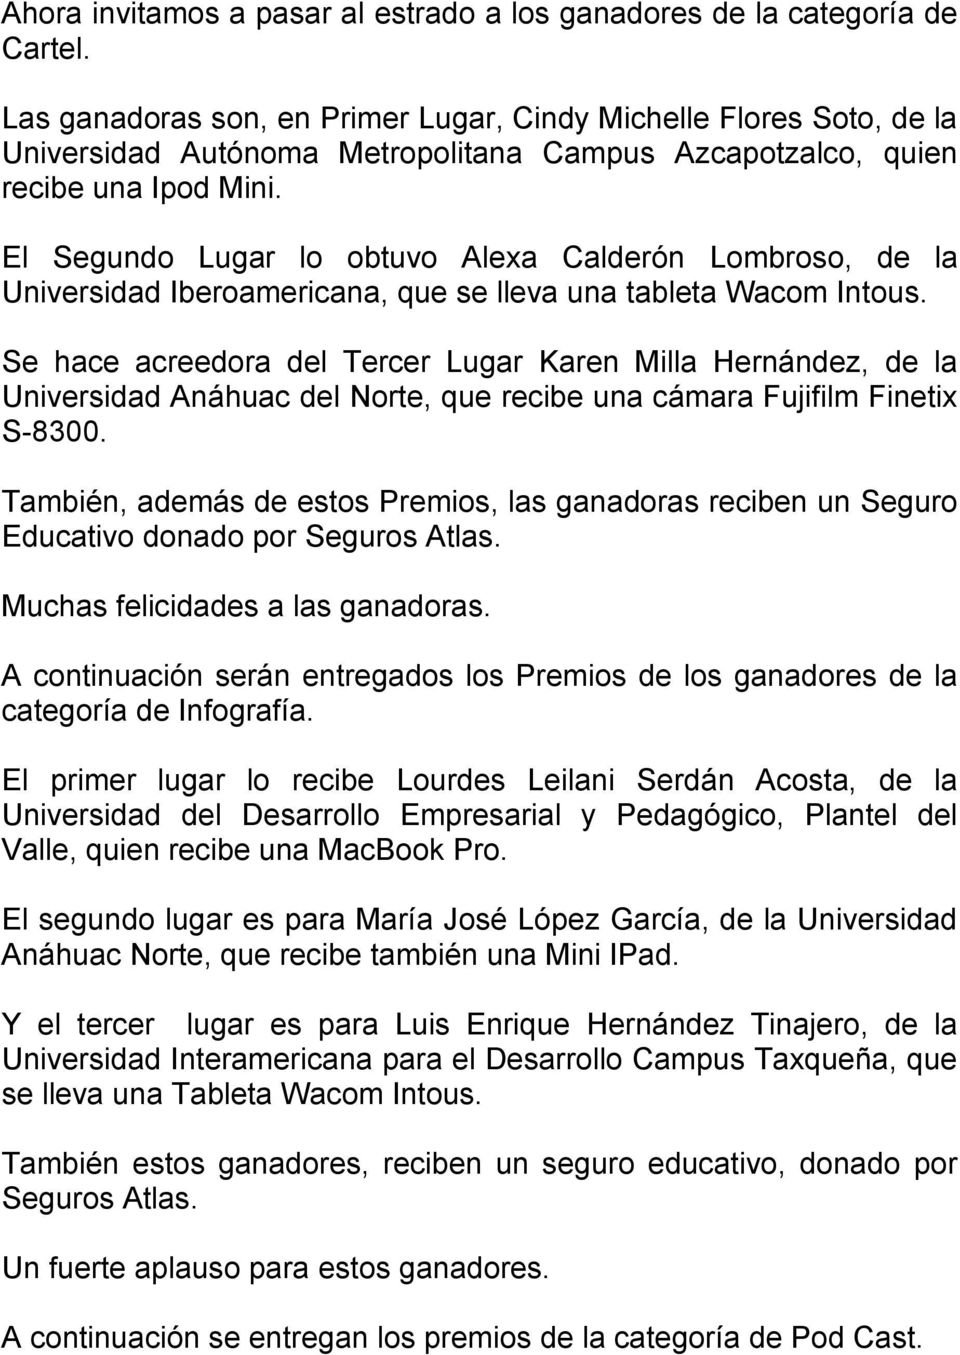 El Segundo Lugar lo obtuvo Alexa Calderón Lombroso, de la Universidad Iberoamericana, que se lleva una tableta Wacom Intous.